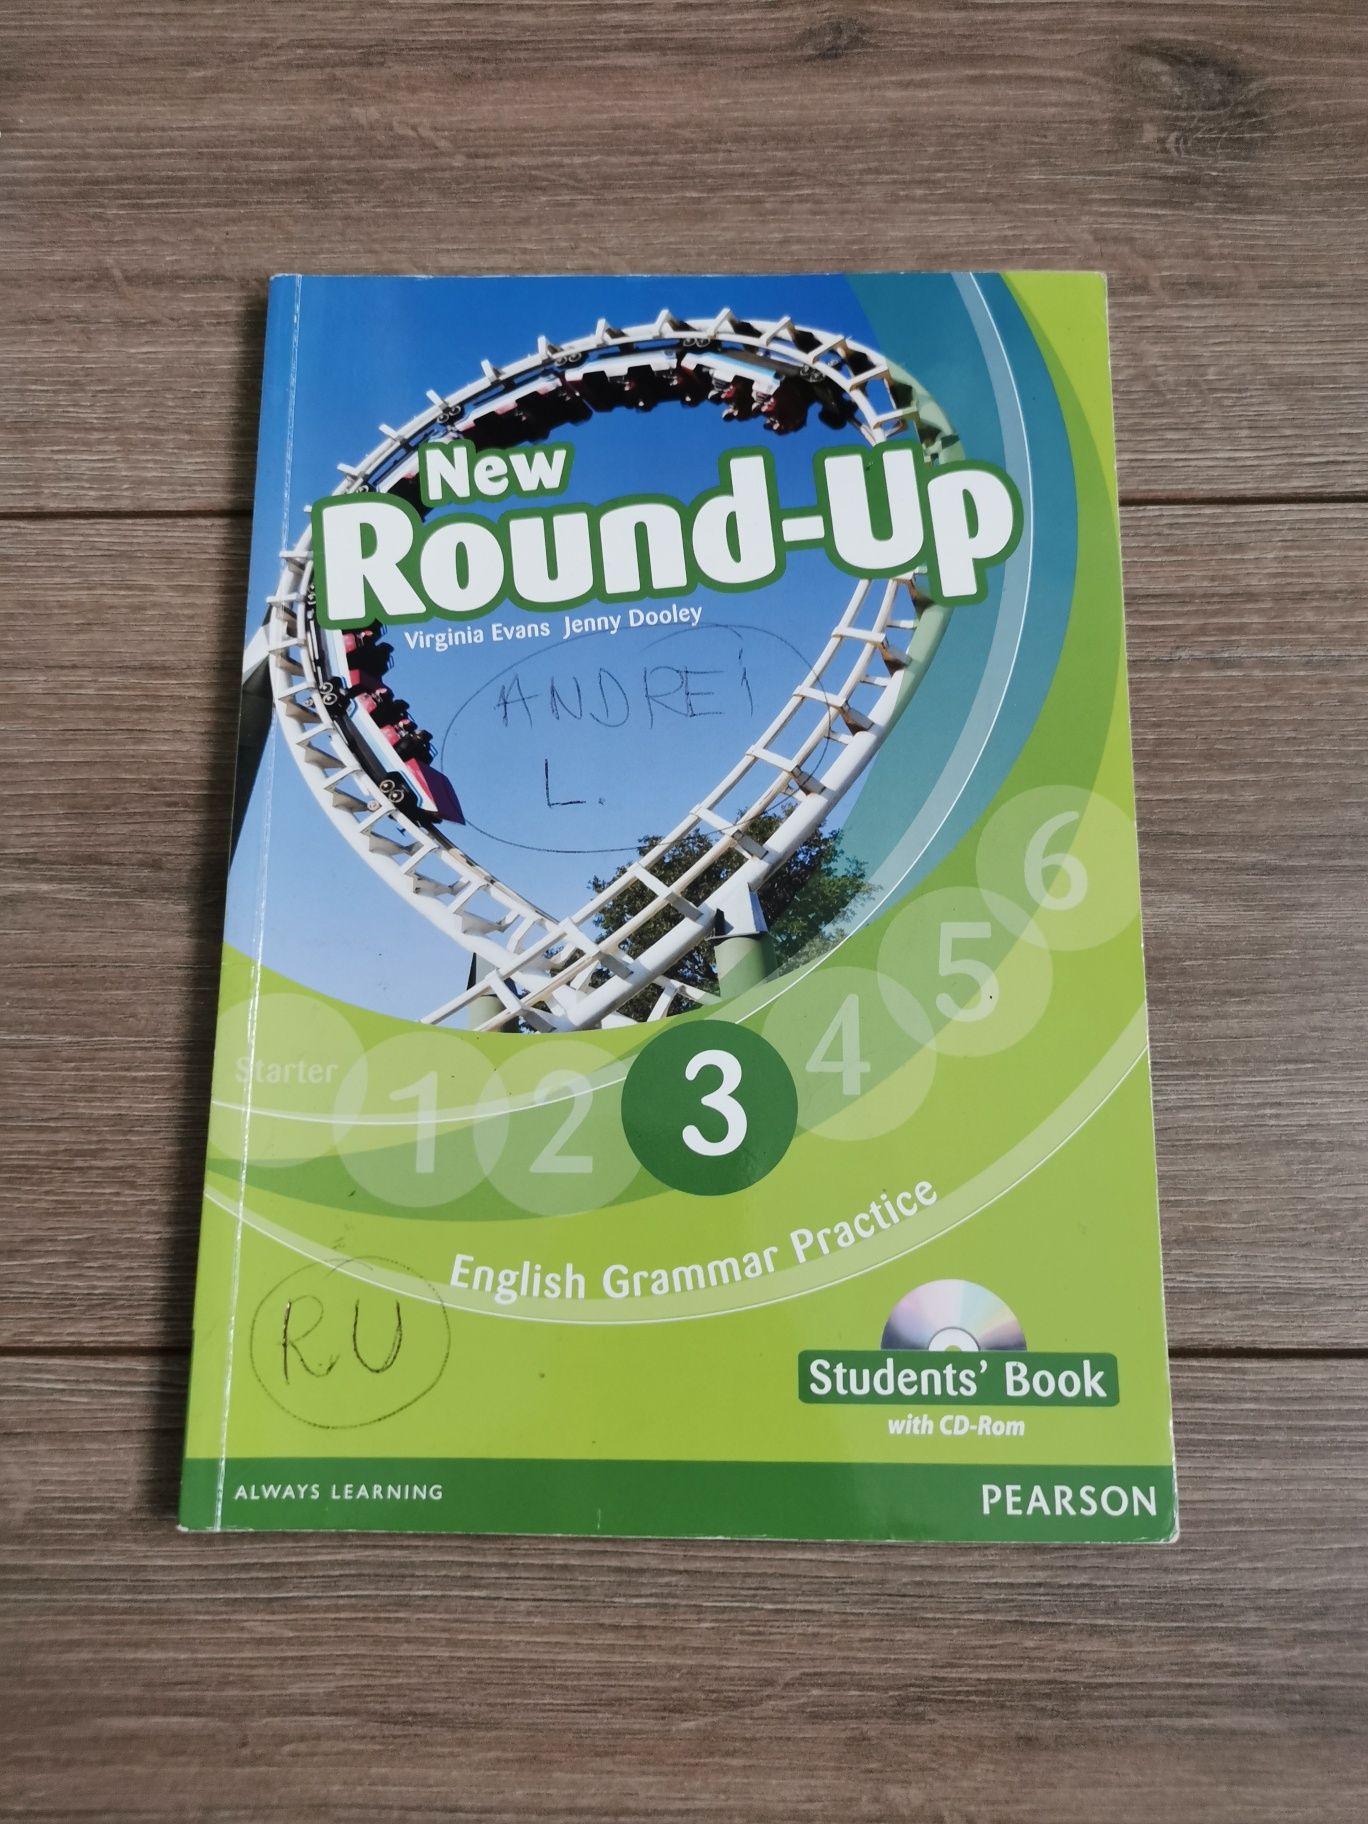 Culegeri engleza - Round-Up si Grammarway